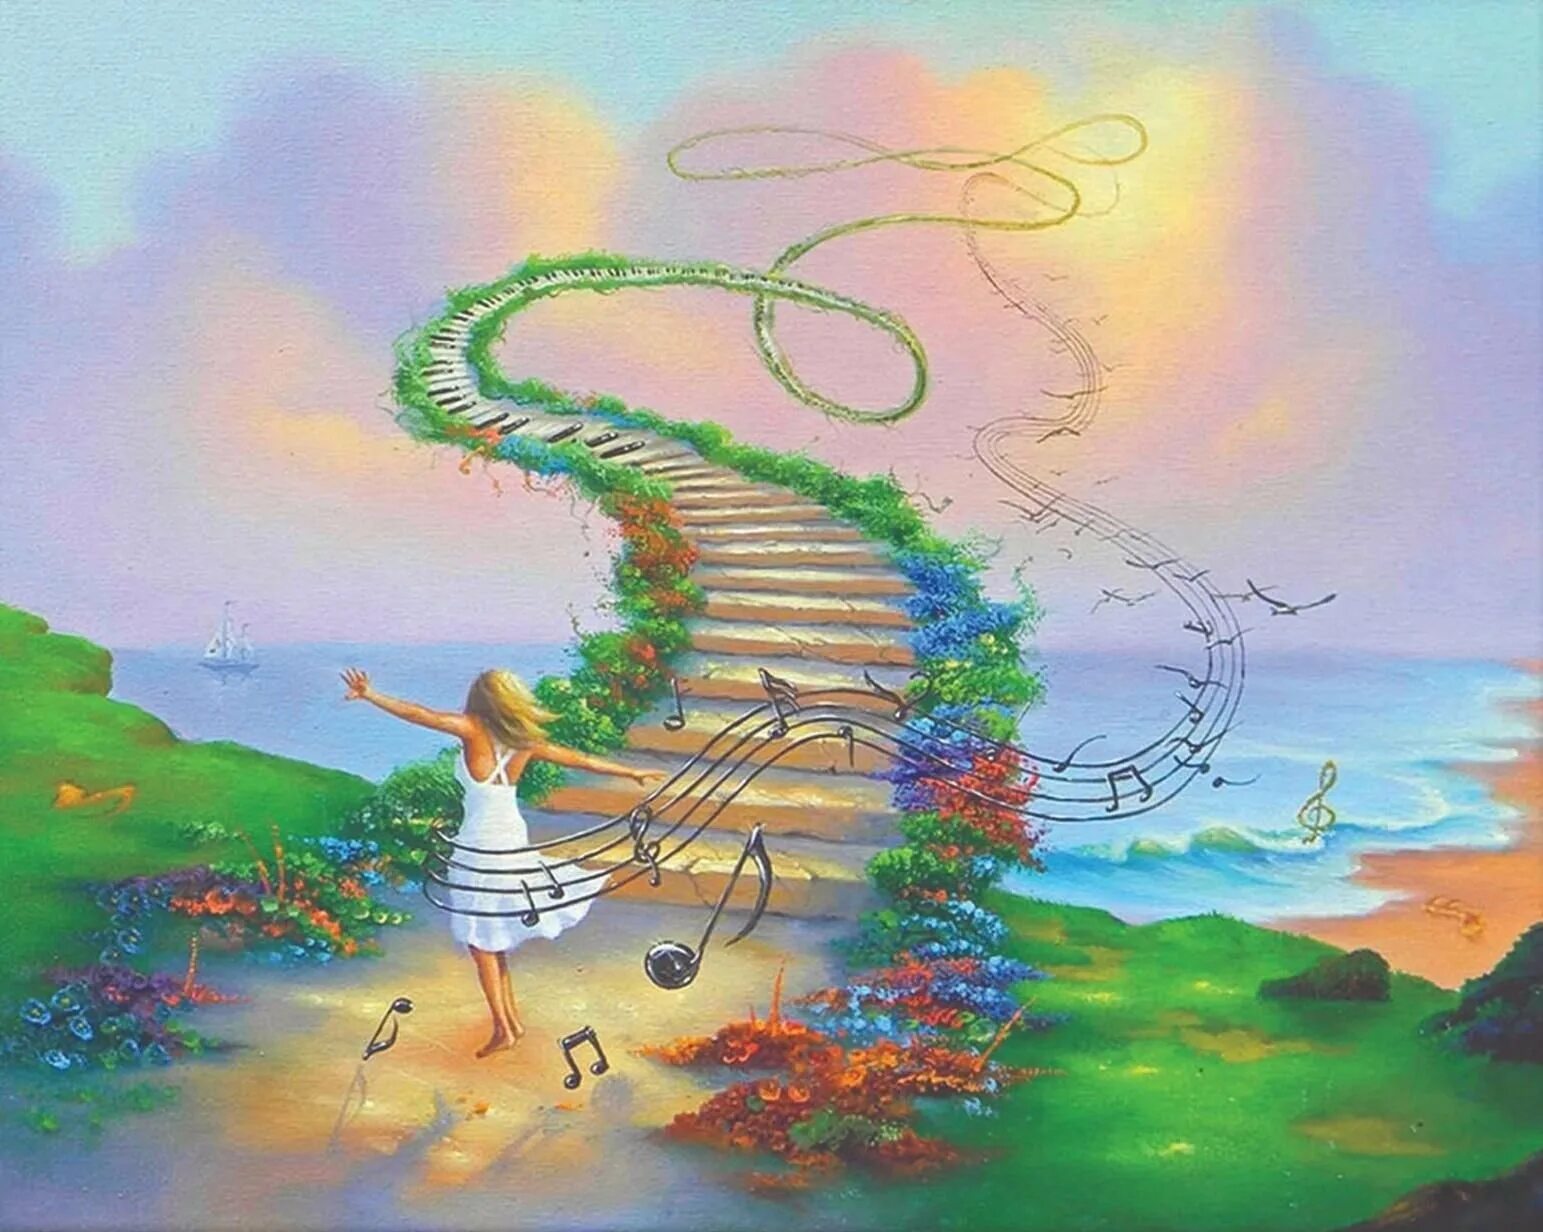 Джим Уоррен (Jim Warren) (р.1949). Лестница в небо Джим Уоррен. Мечта рисунок. Фантазийные рисунки.